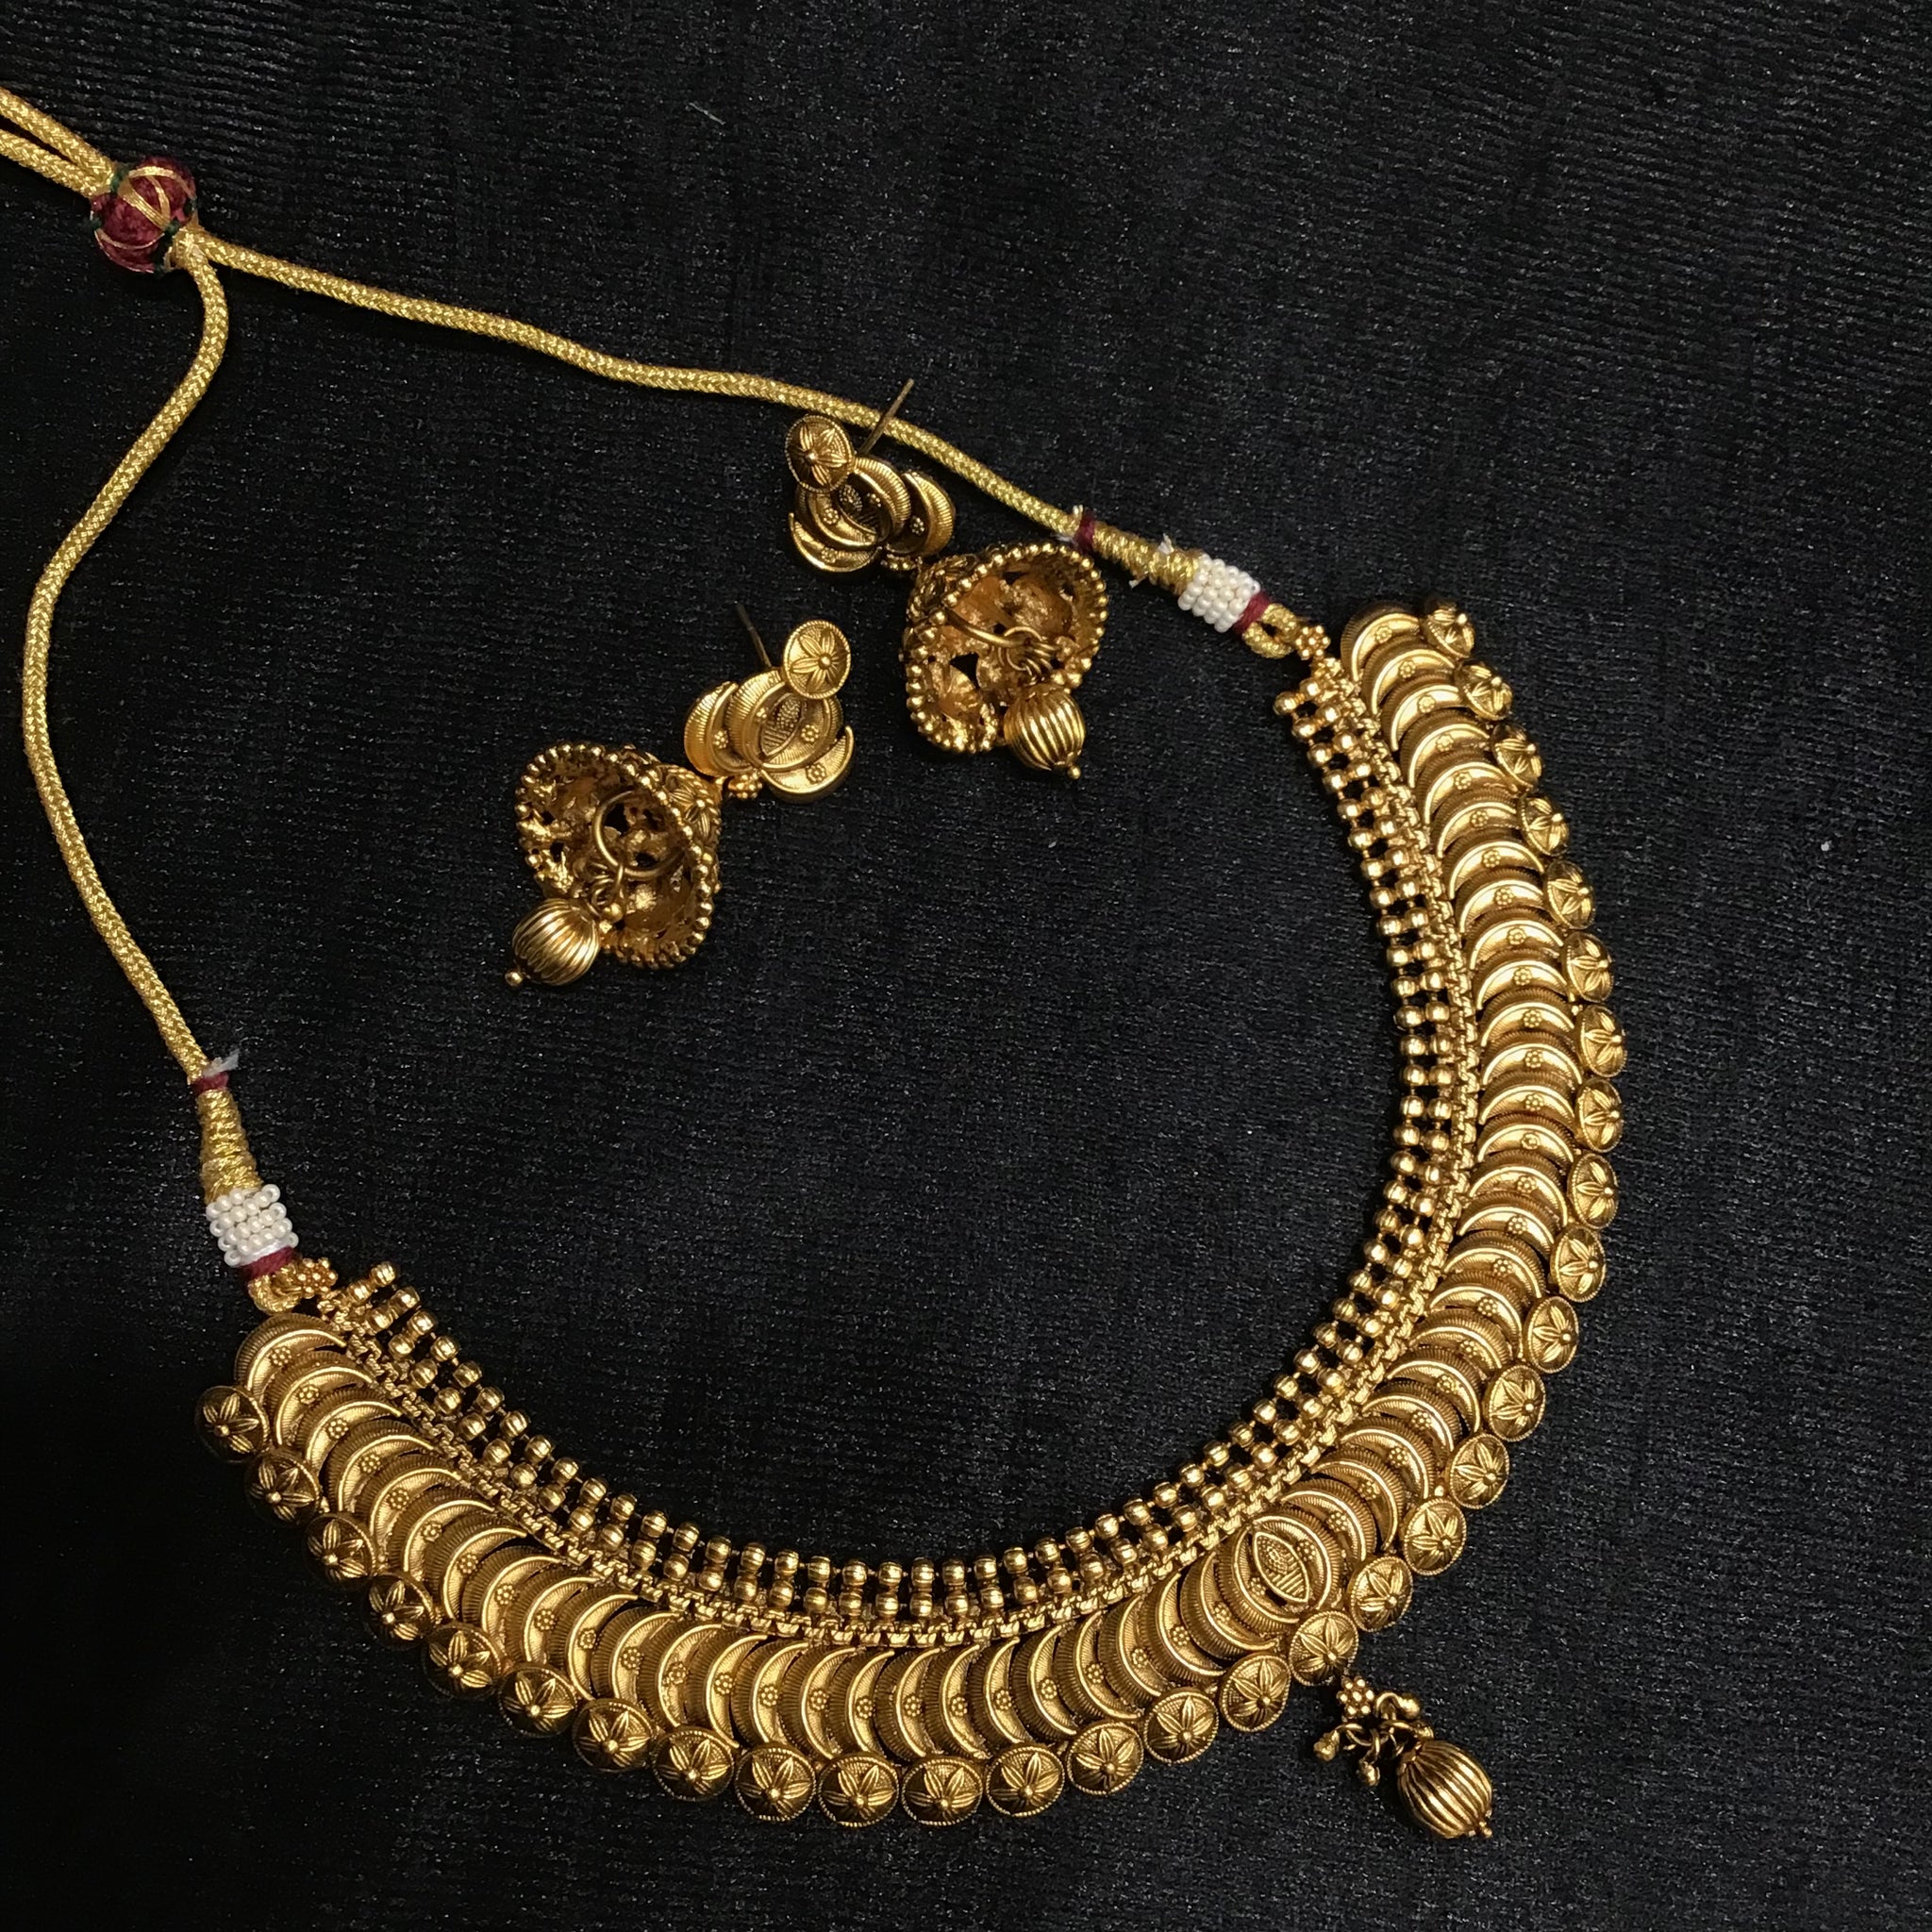 Round Neck Antique Necklace Set 3635-28 - Dazzles Jewellery